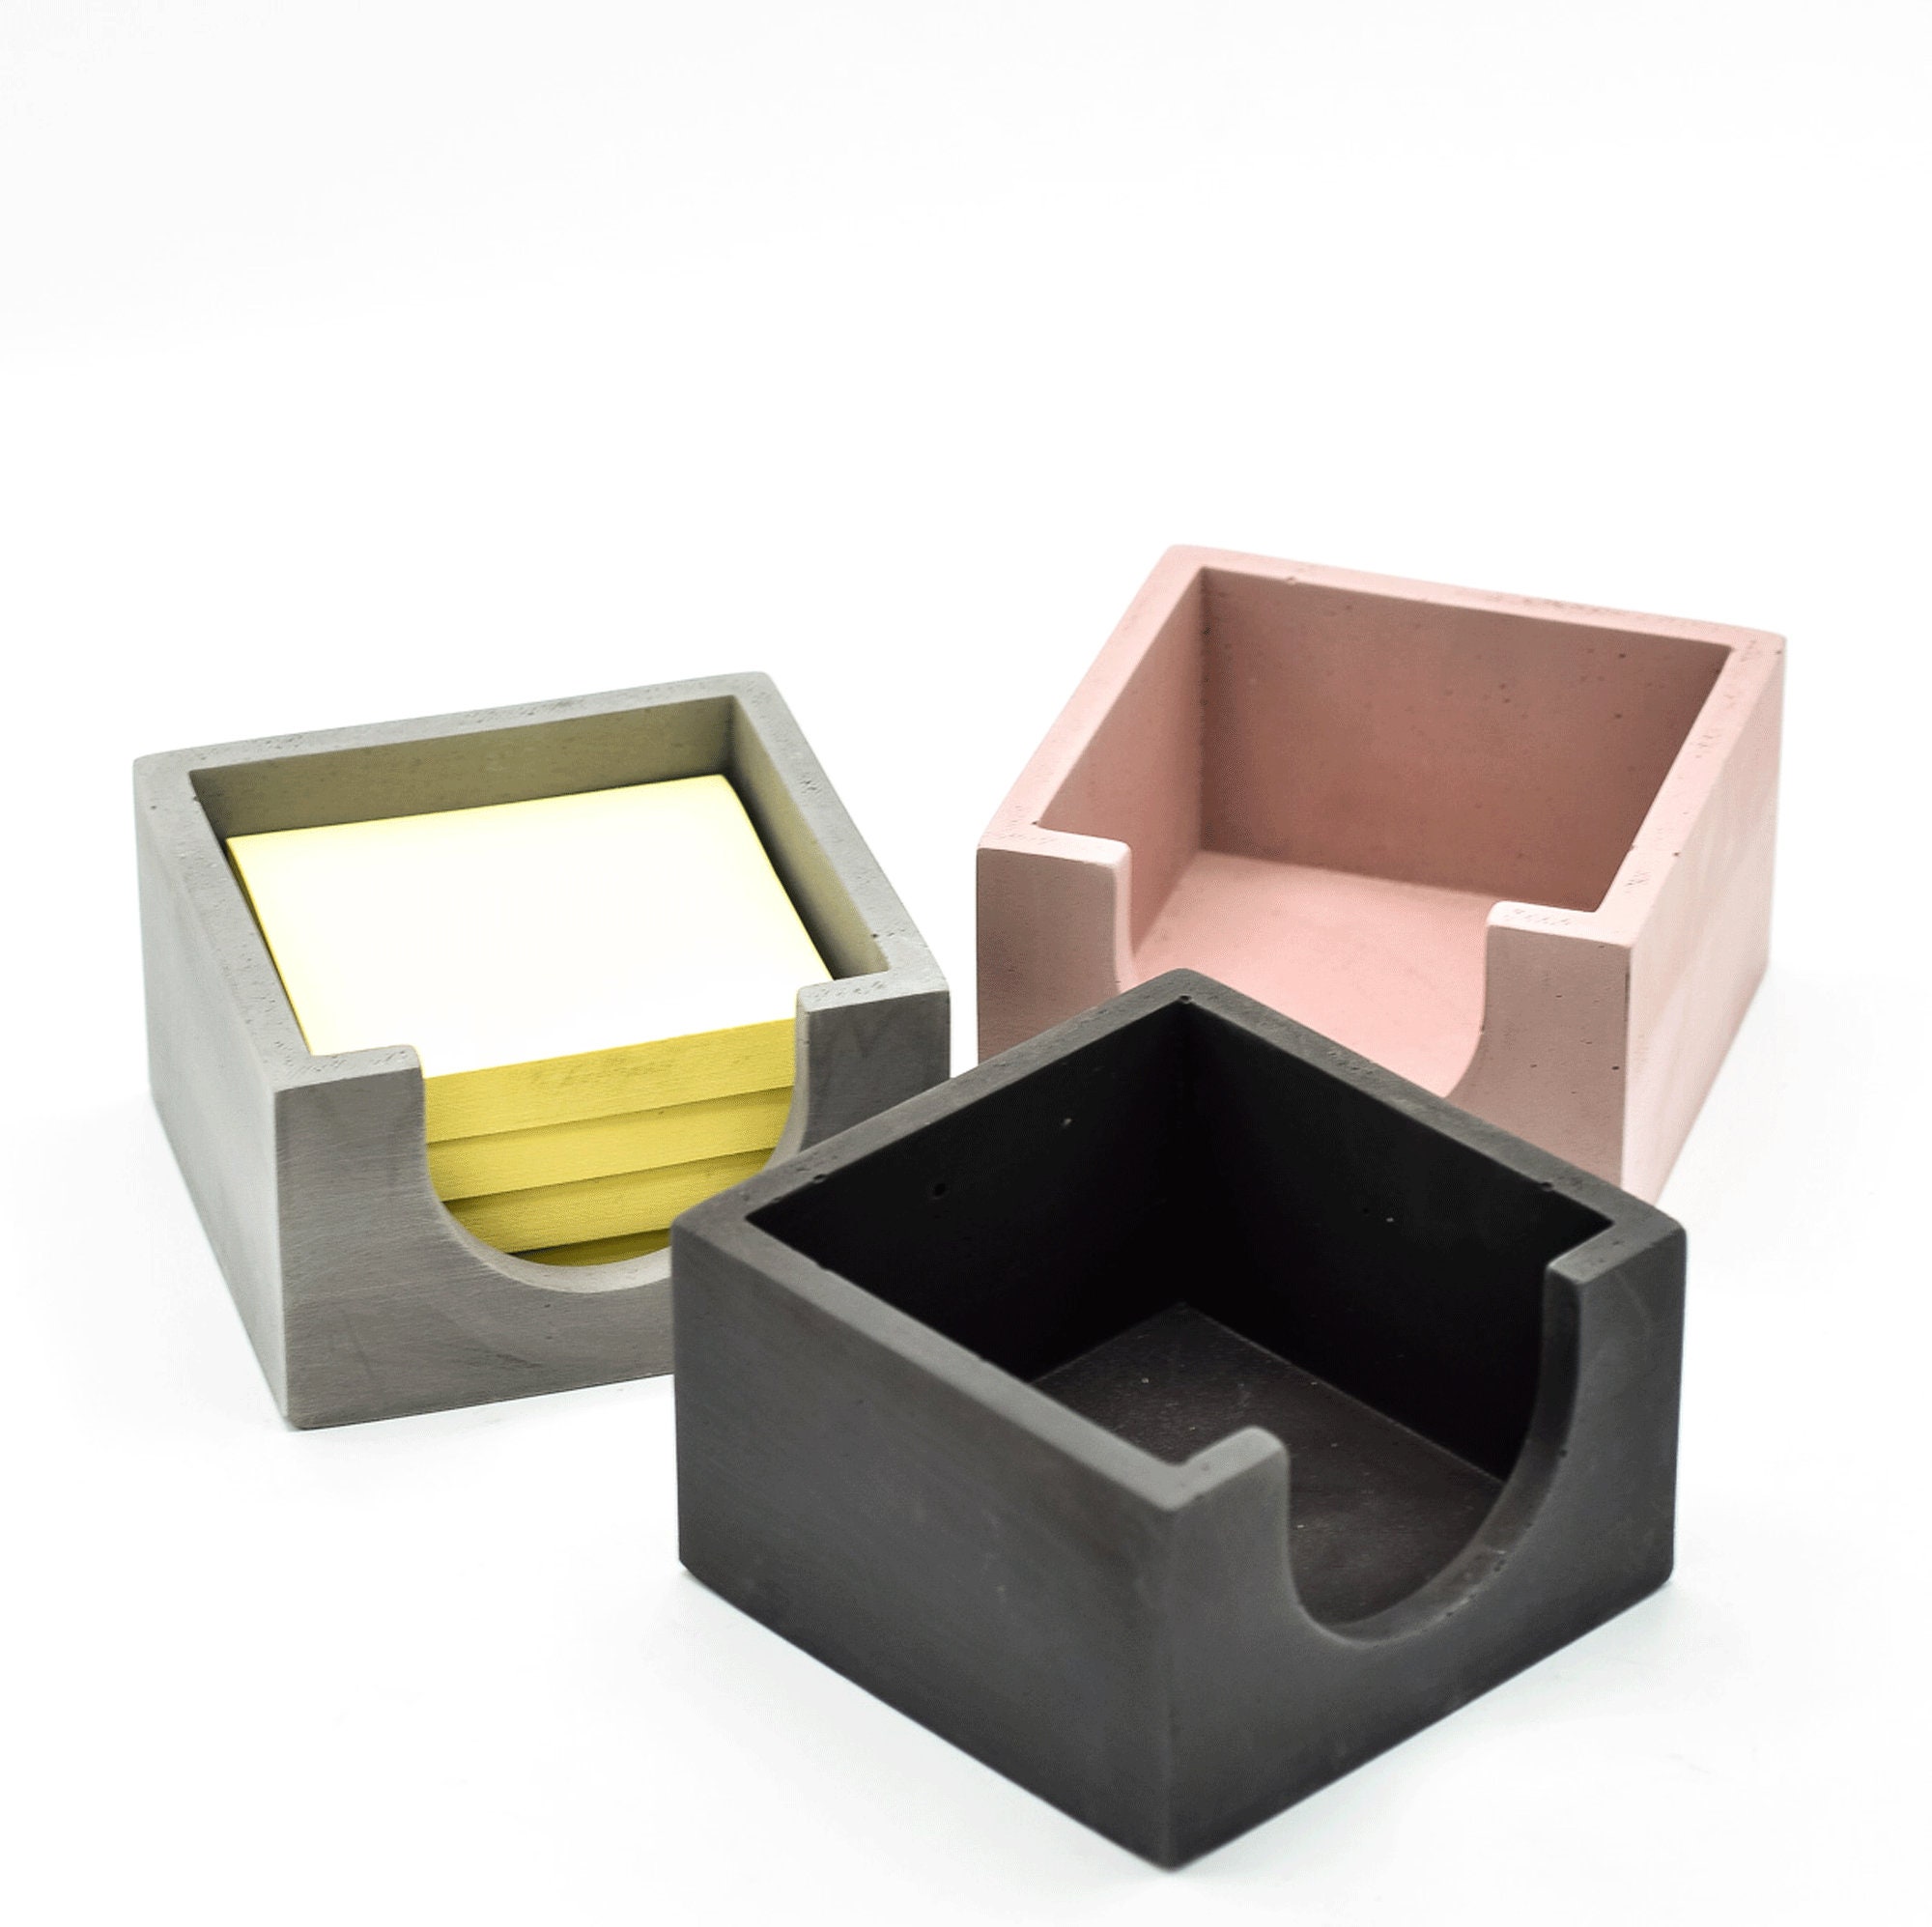 Desk Accessories Set - Post-It Holder - Pen Cup - Desk Organizer - Desk Set  - Minimalist - Cement - Office Organizer - Paper Clip Holder - Modern 